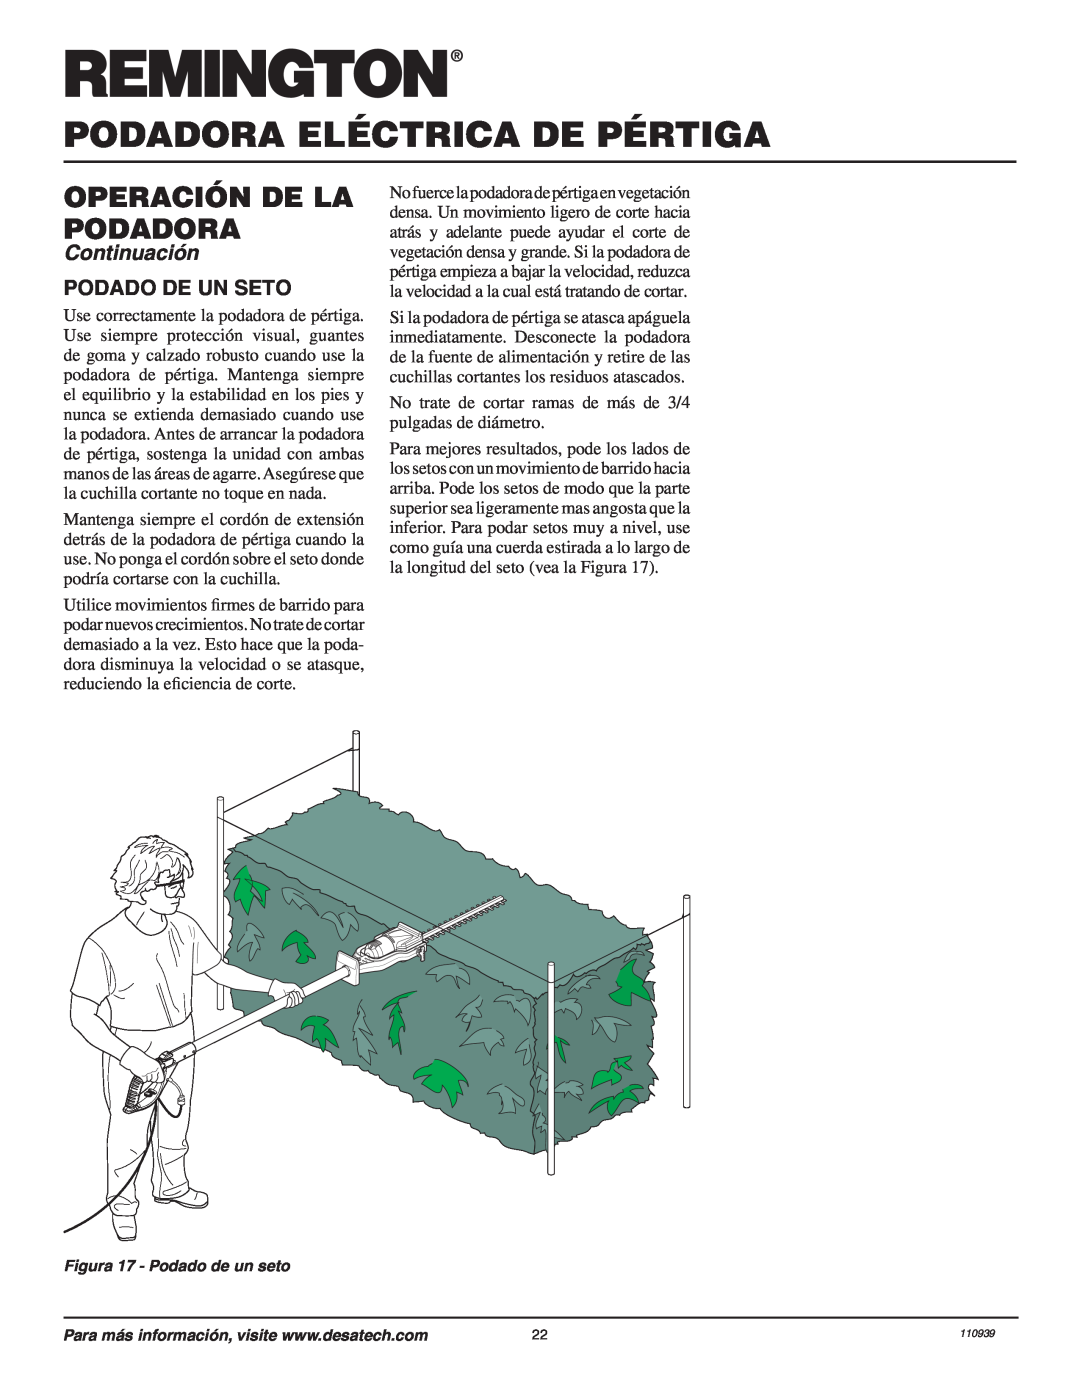 Desa 110946-01A owner manual Podado De Un Seto, Podadora Eléctrica De Pértiga, Operación De La Podadora, Continuación 